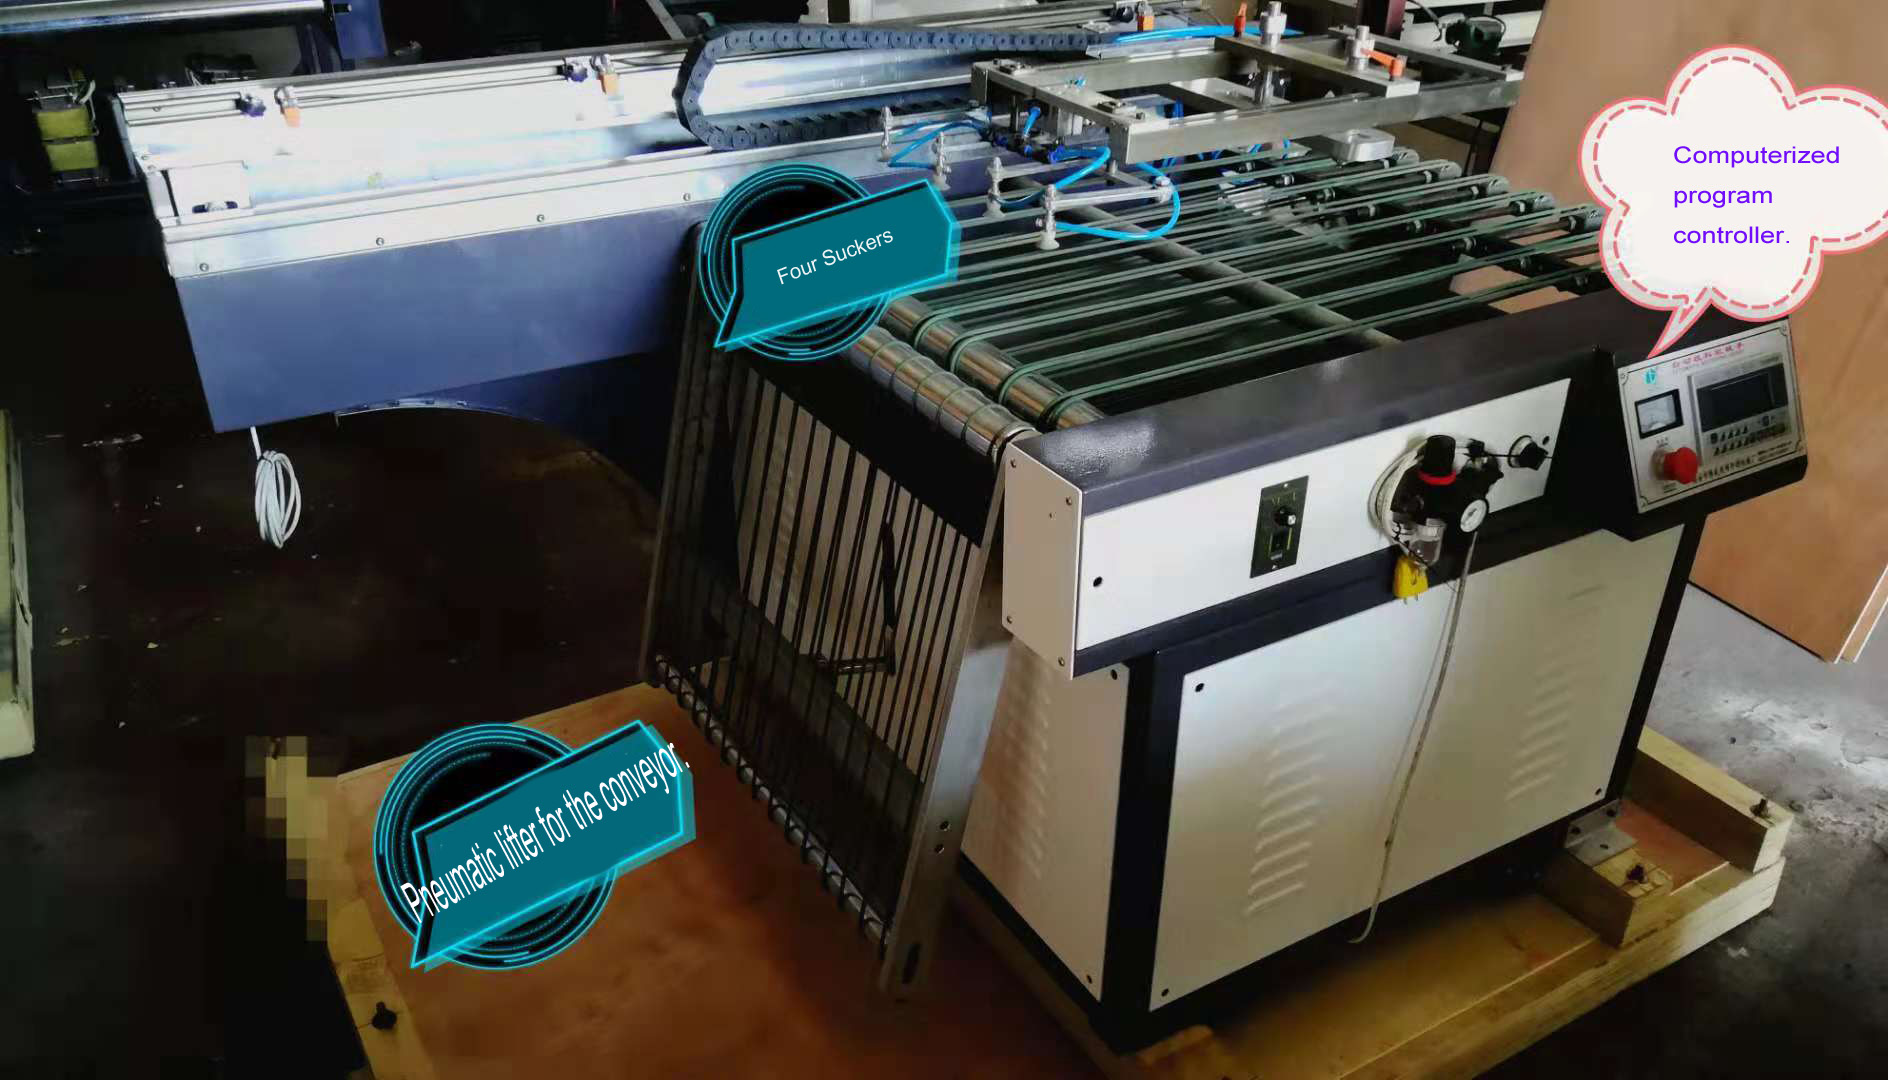 Siebdruckmaschine mit automatischer Take-Off-Einheit und UV-Trocknungsmaschine